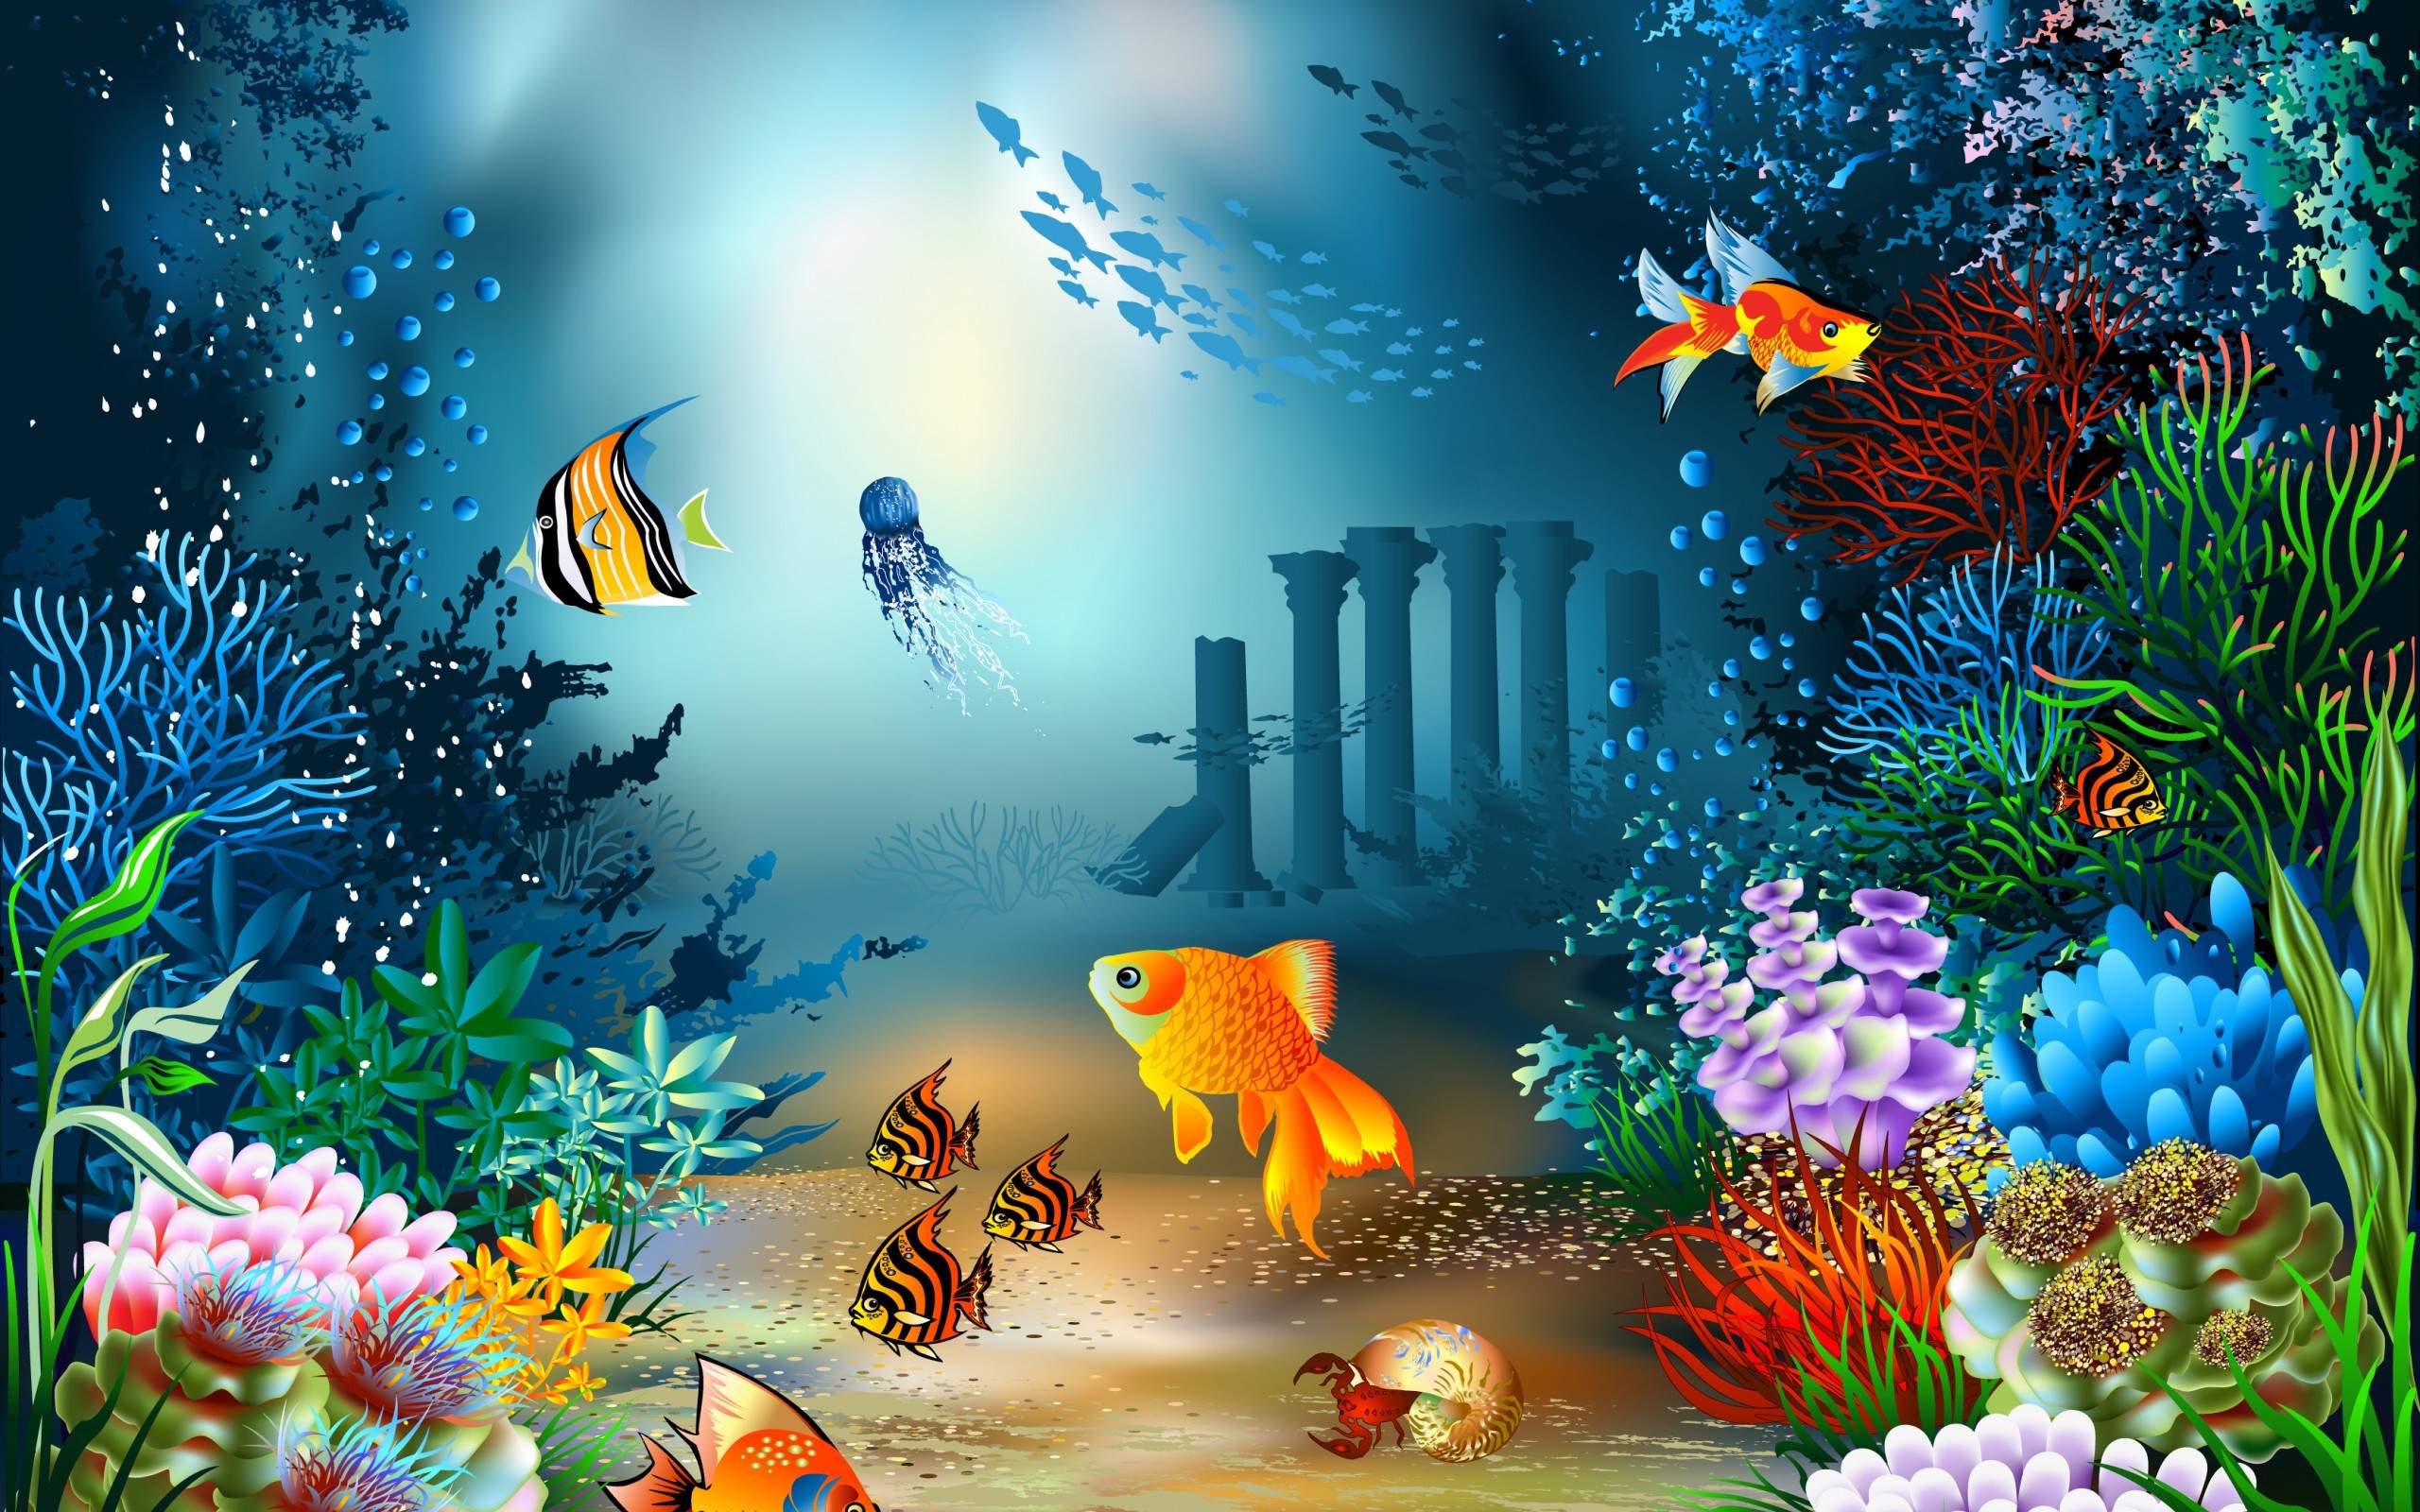 海の生活の壁紙,海洋生物学,水中,魚,サンゴ礁,サンゴ礁の魚